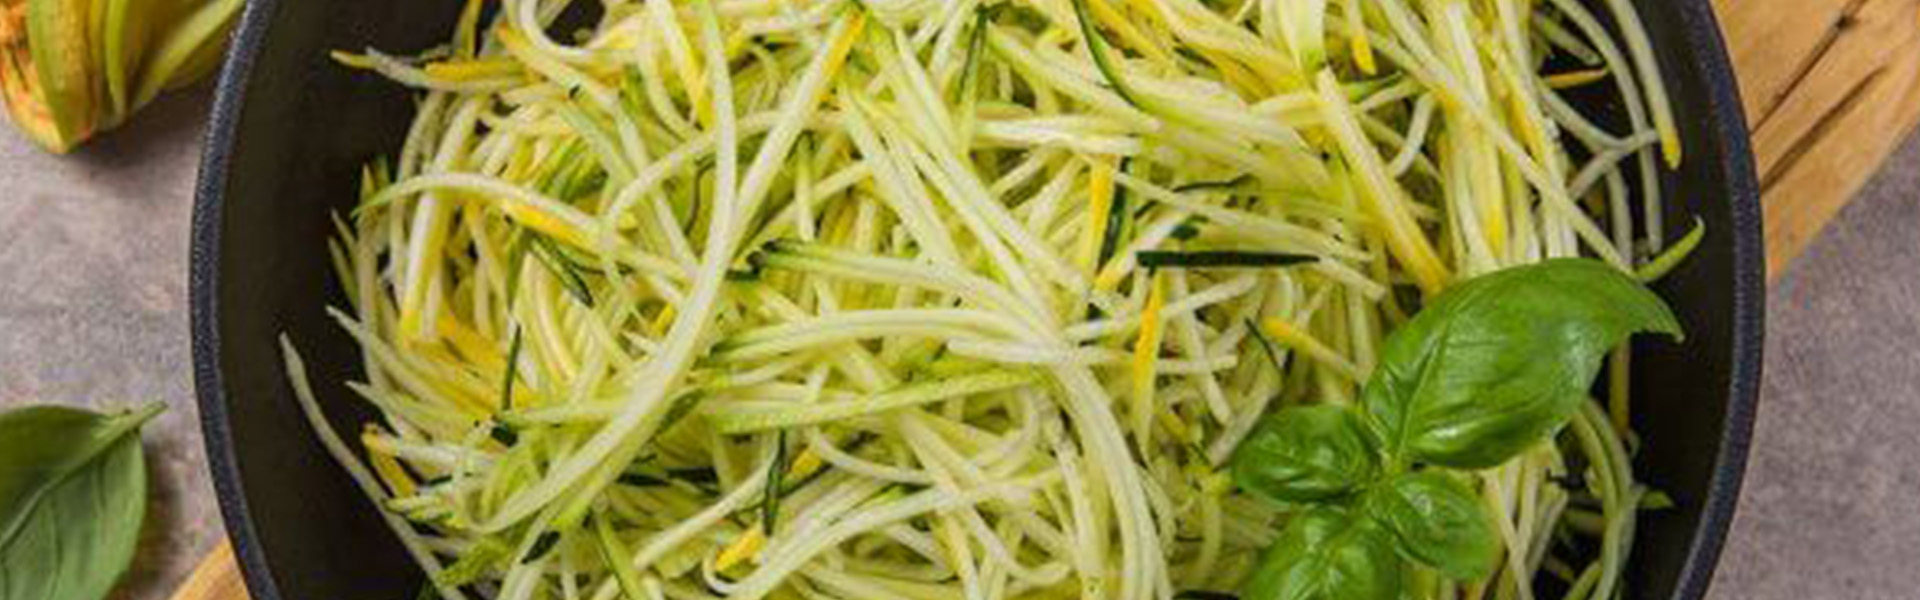 Cuketové špagety se zelenou omáčkou